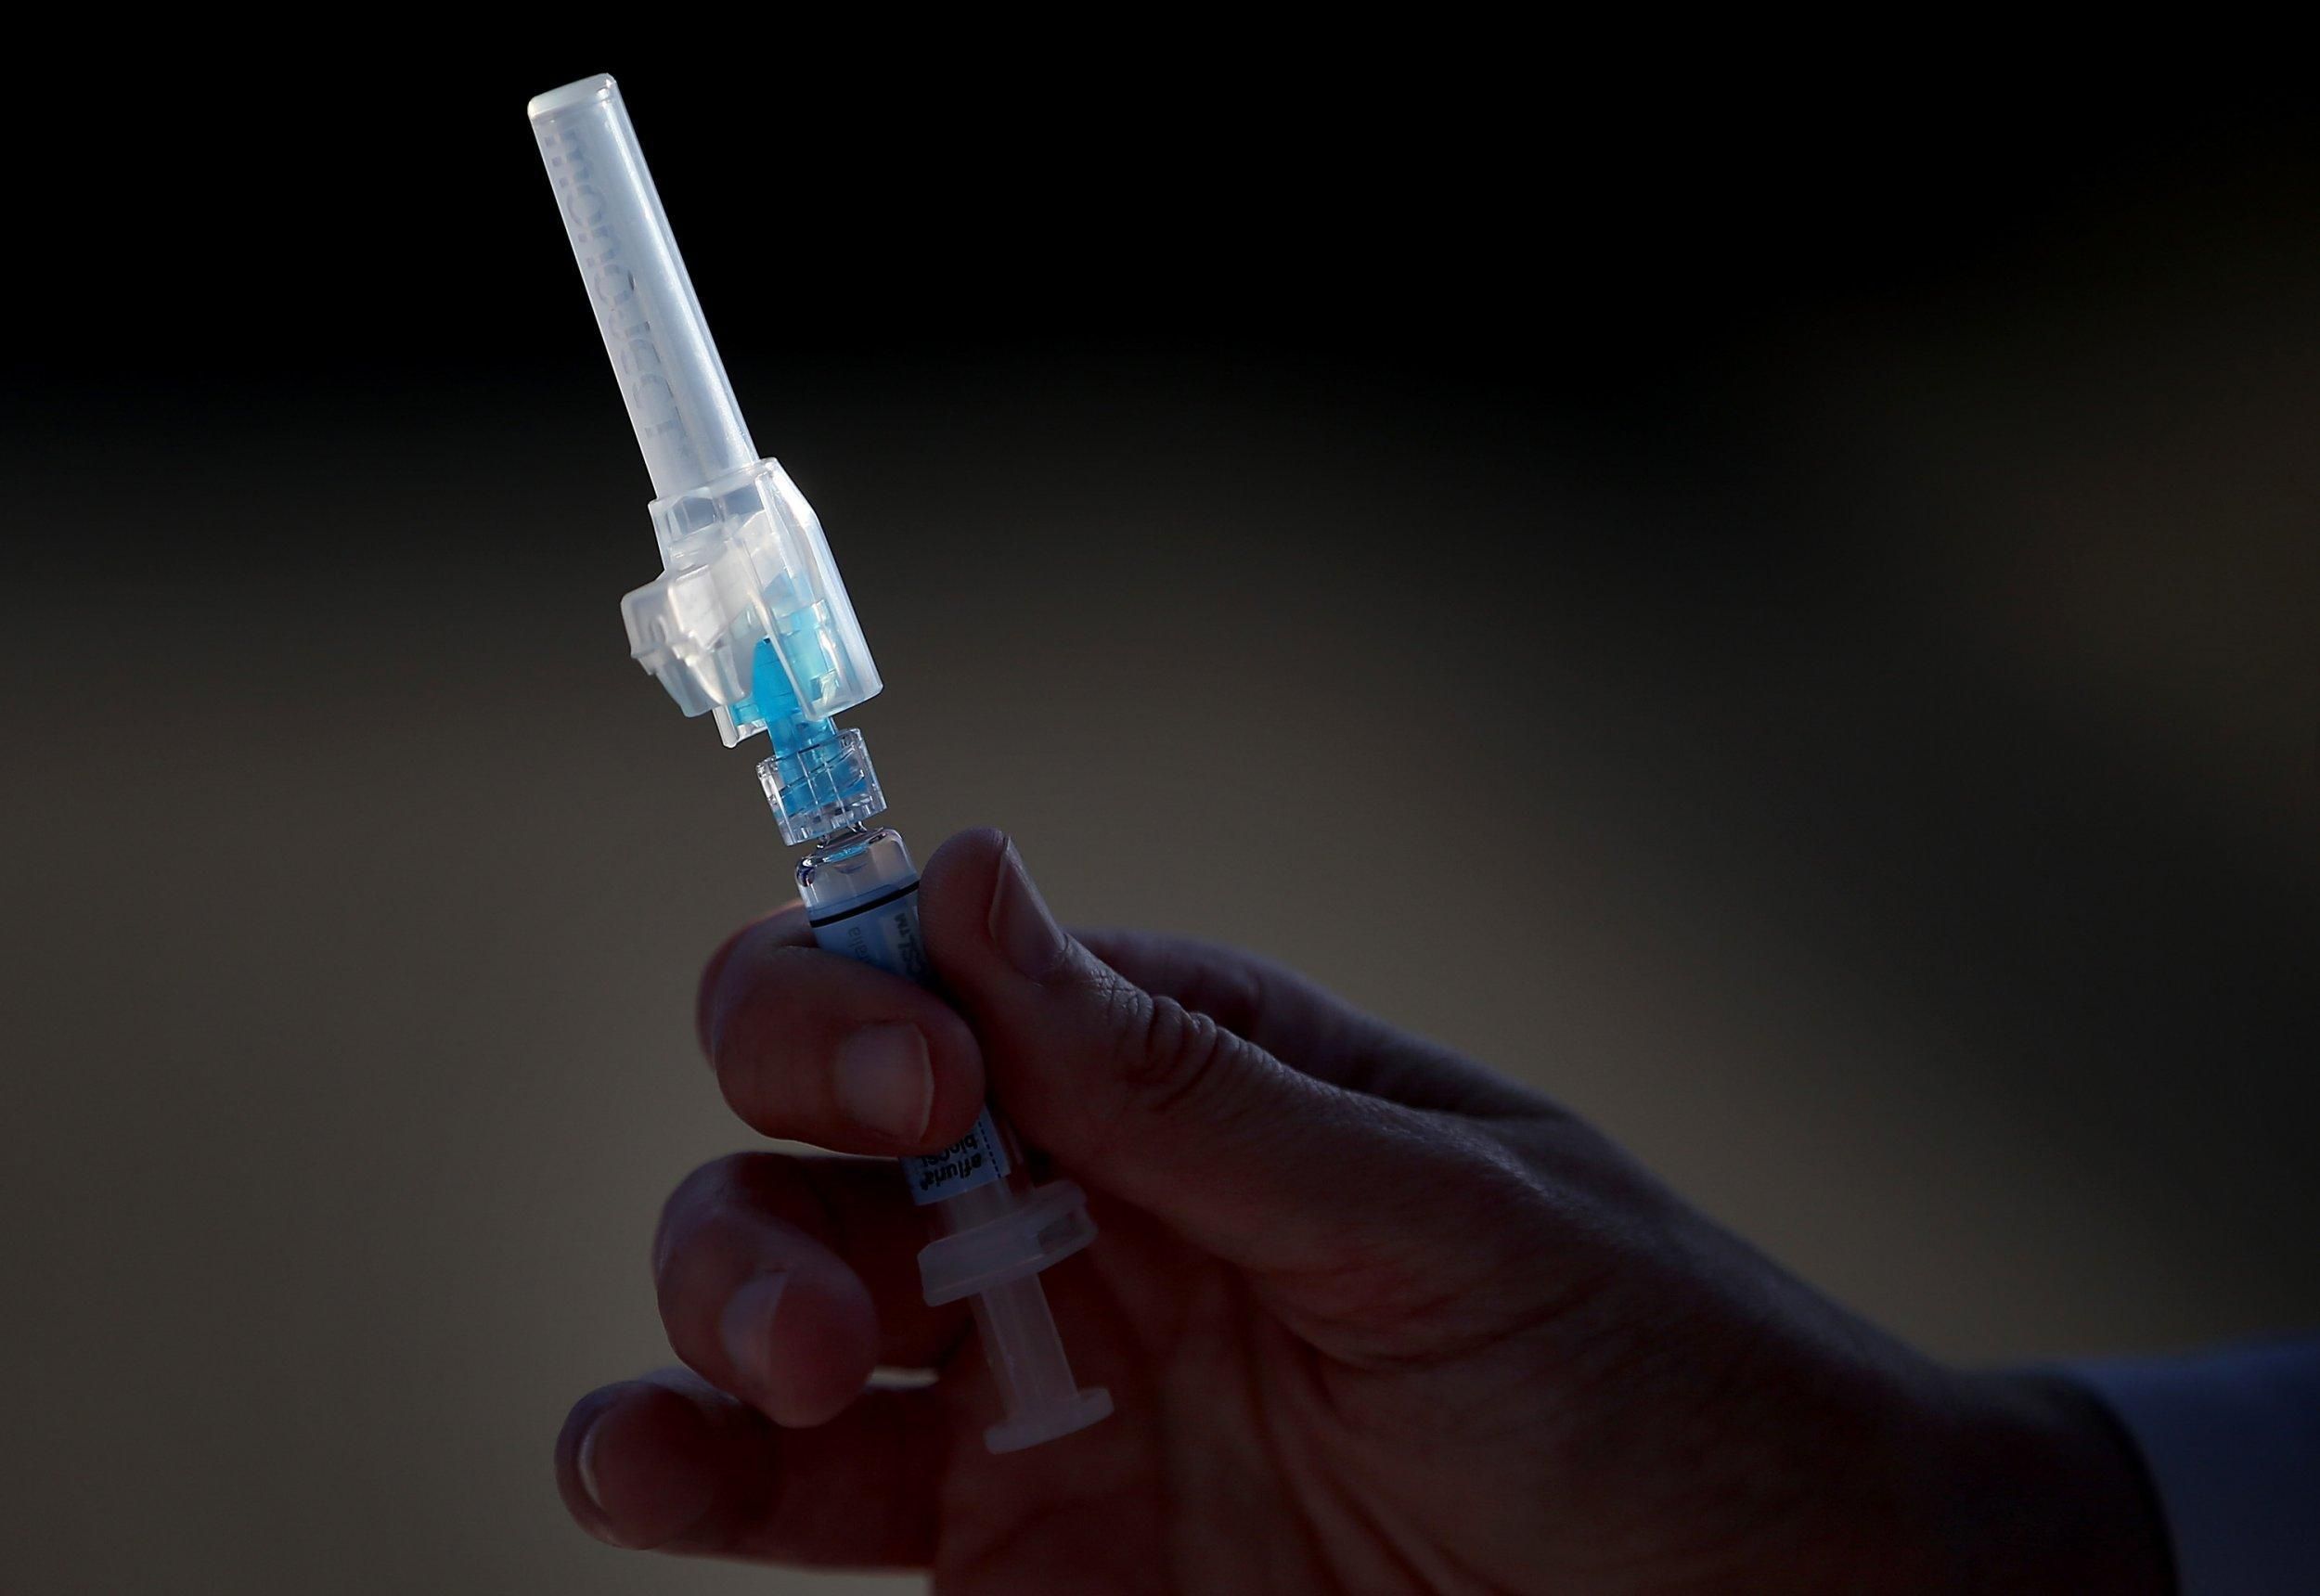 Италия первой в ЕС введет обязательную вакцинацию для всех профессий
